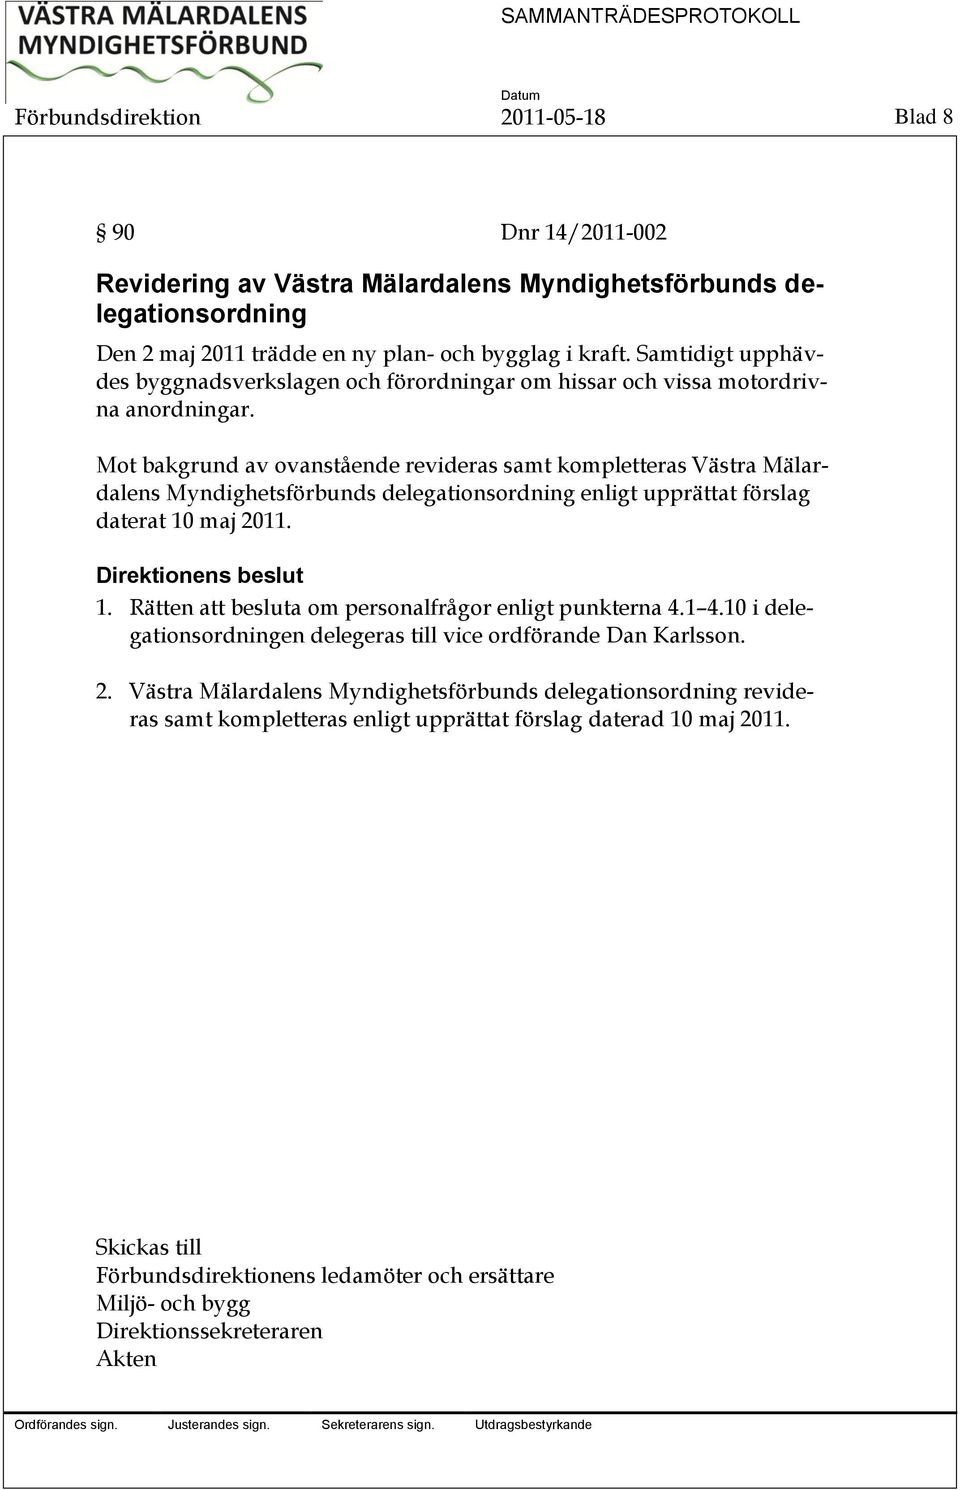 Mot bakgrund av ovanstående revideras samt kompletteras Västra Mälardalens Myndighetsförbunds delegationsordning enligt upprättat förslag daterat 10 maj 2011. Direktionens beslut 1.